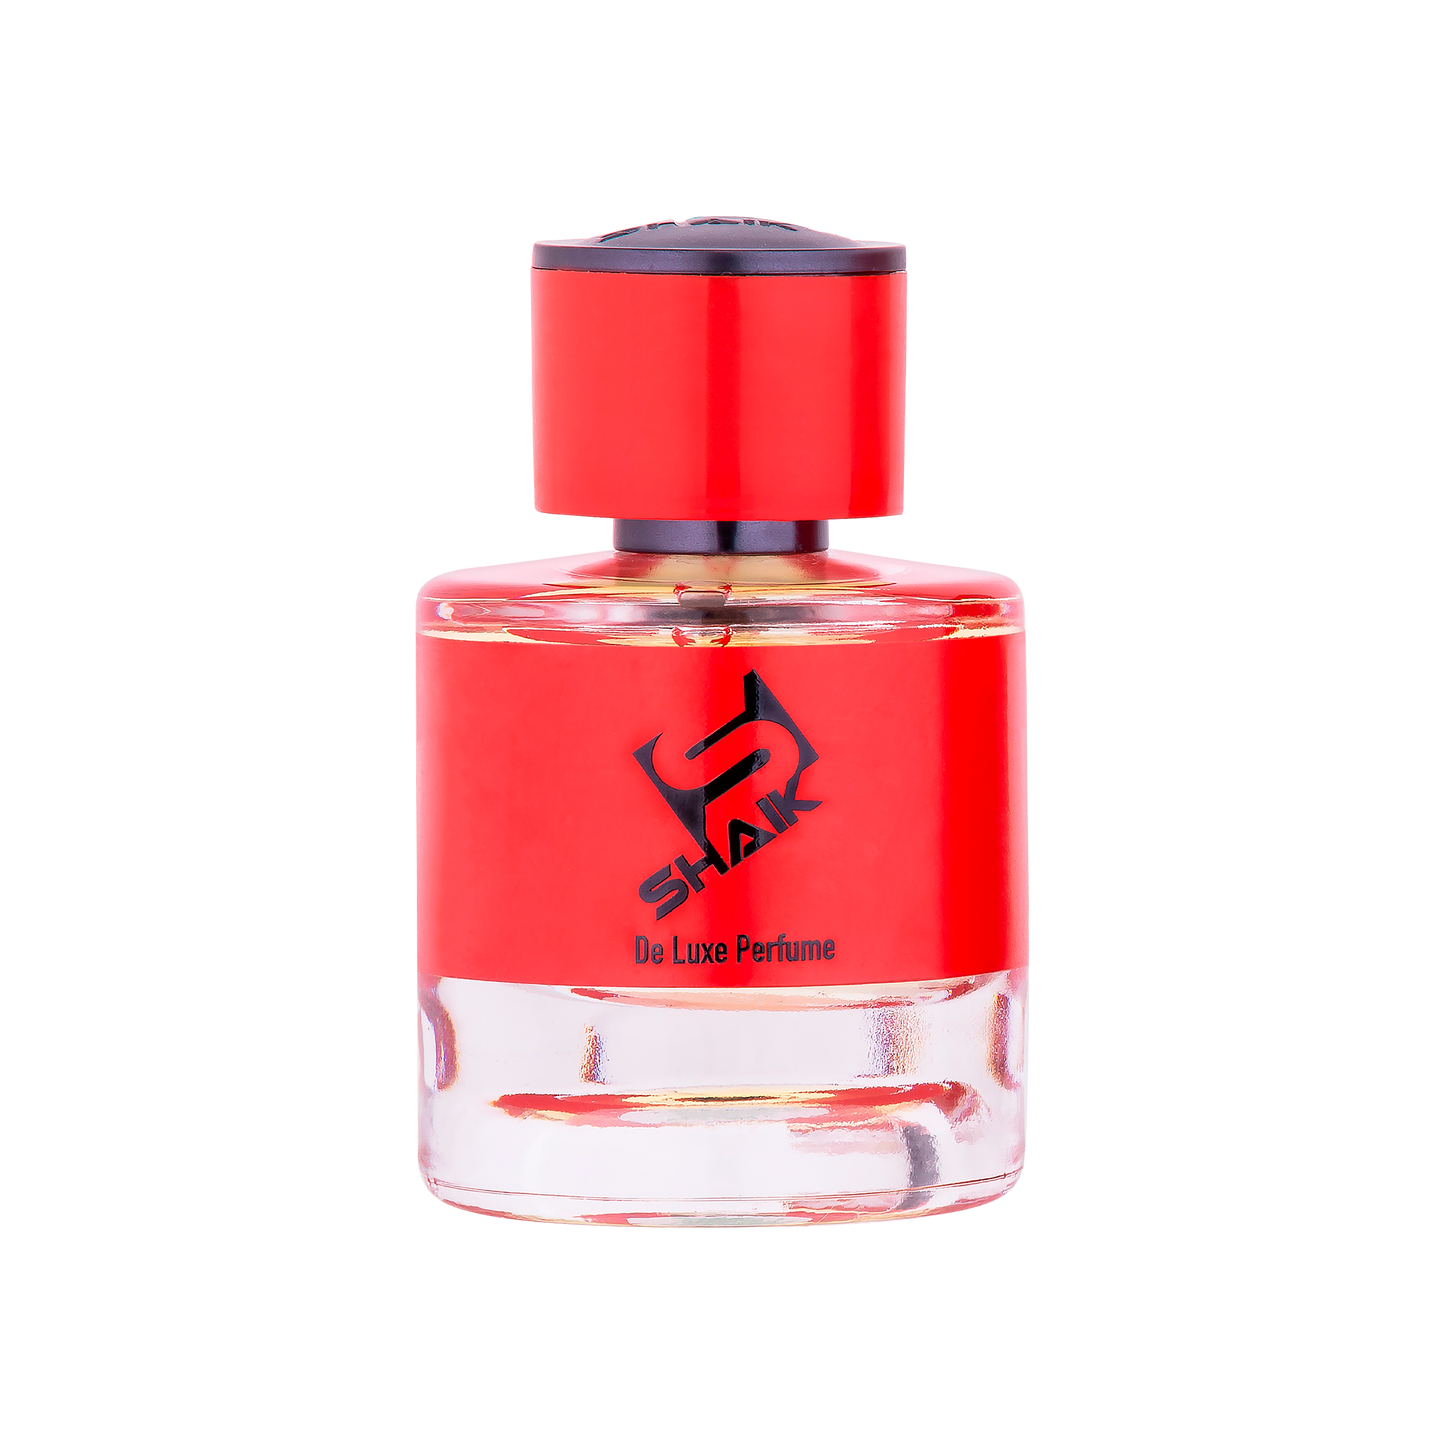 Shaik - 167 - Orange, Jasmine, Oakmoss - Shaik Perfume